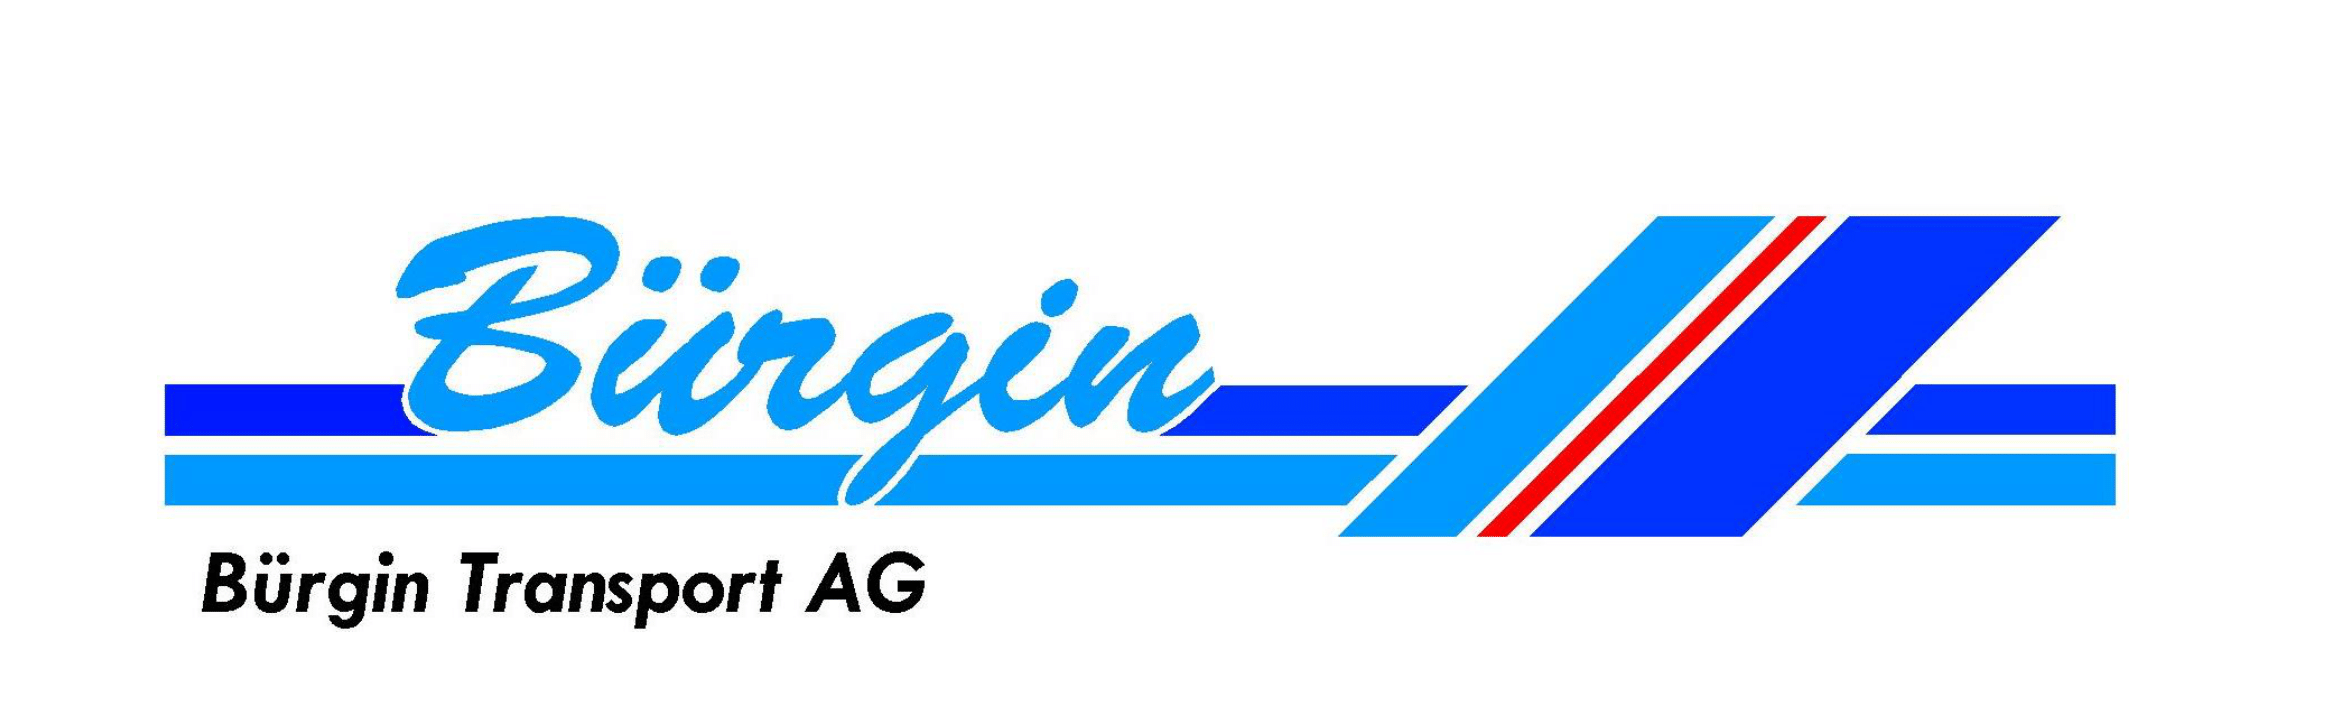 Bürgin Transport AG